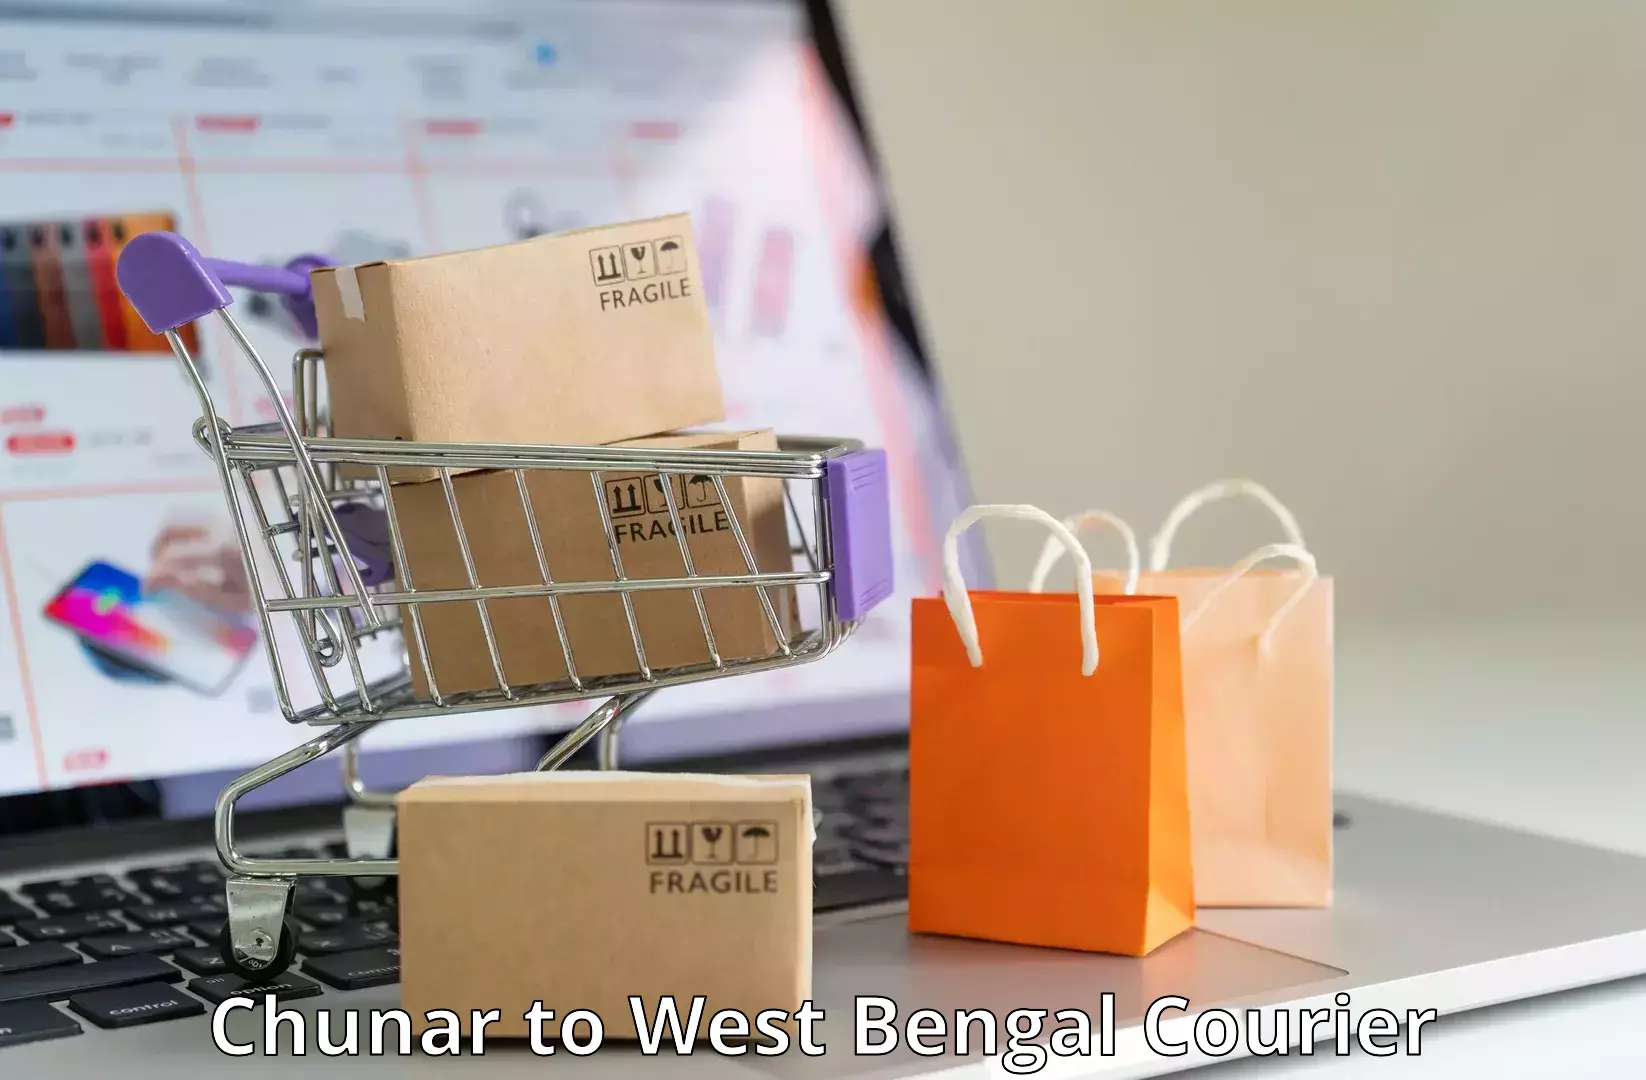 Door-to-door freight service Chunar to West Bengal